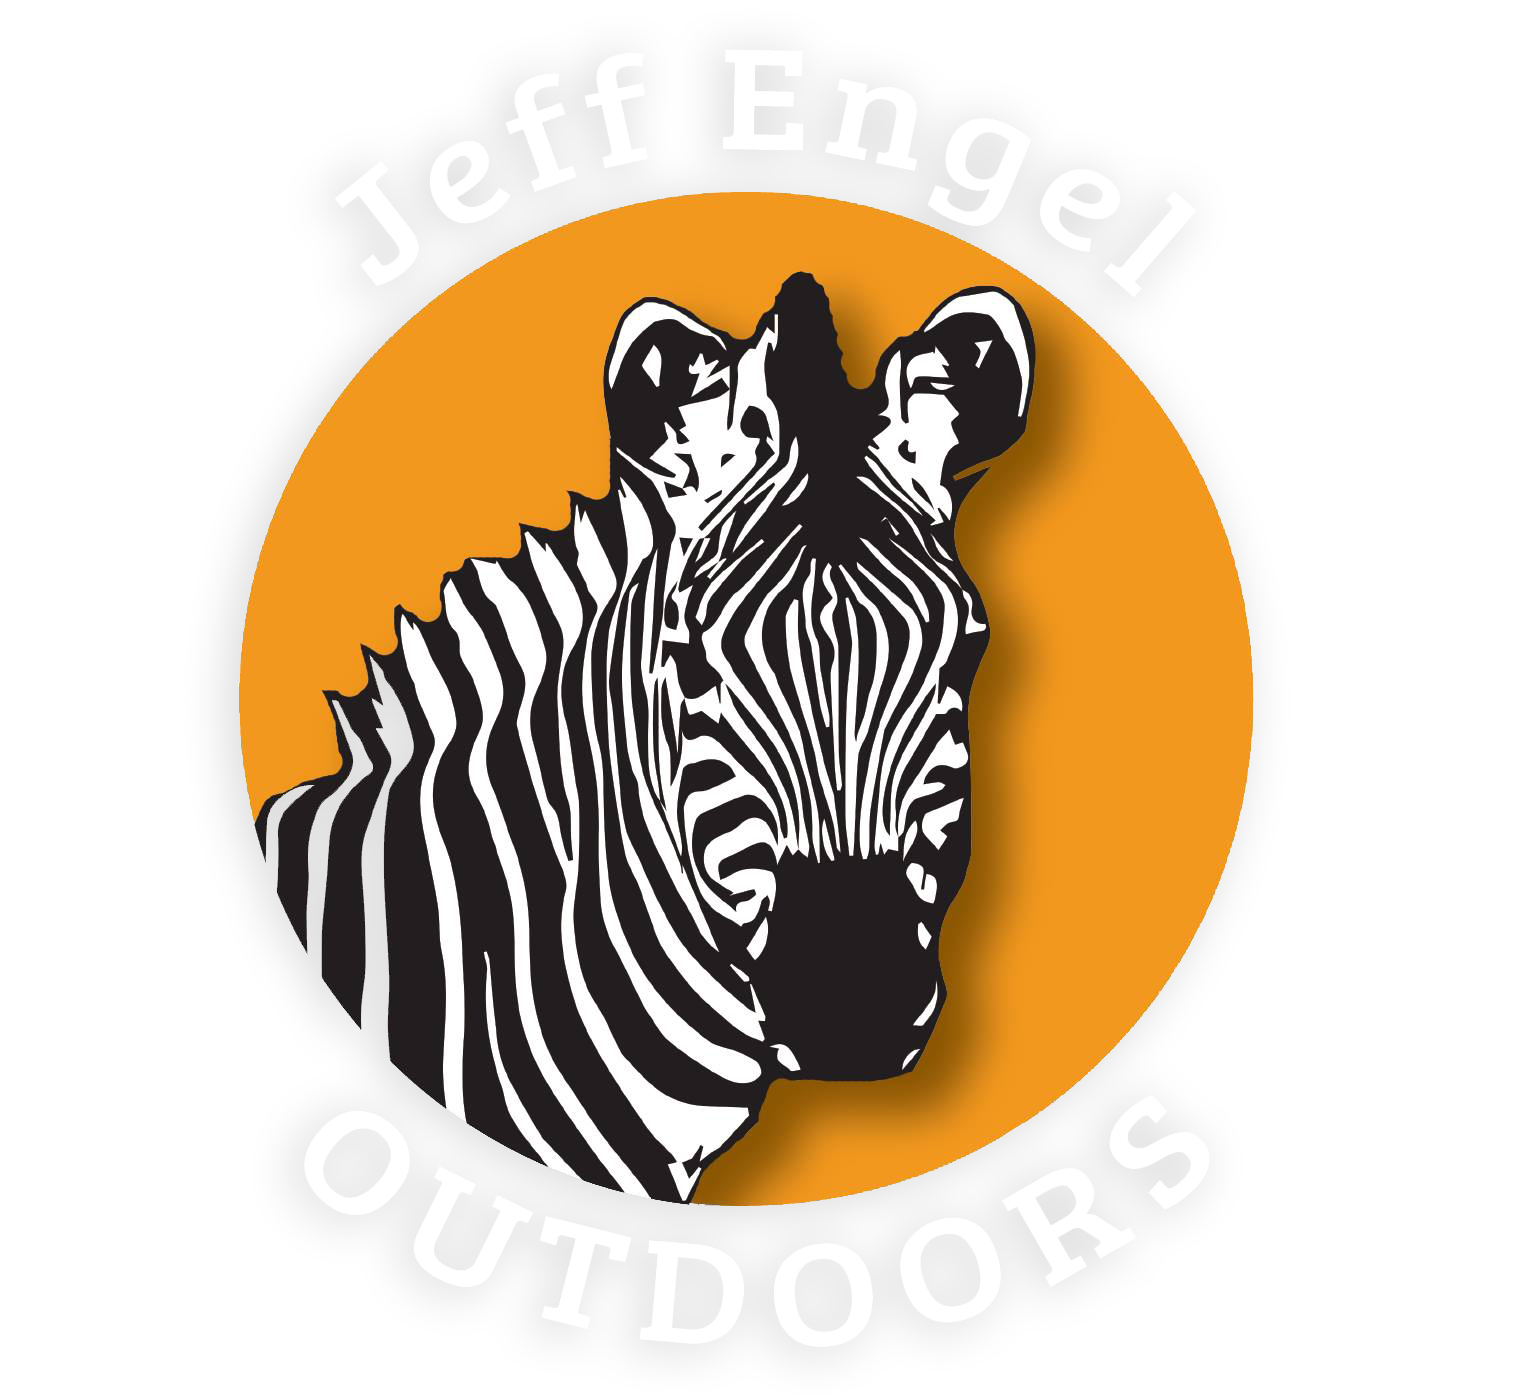 Jeff Engel Outdoors